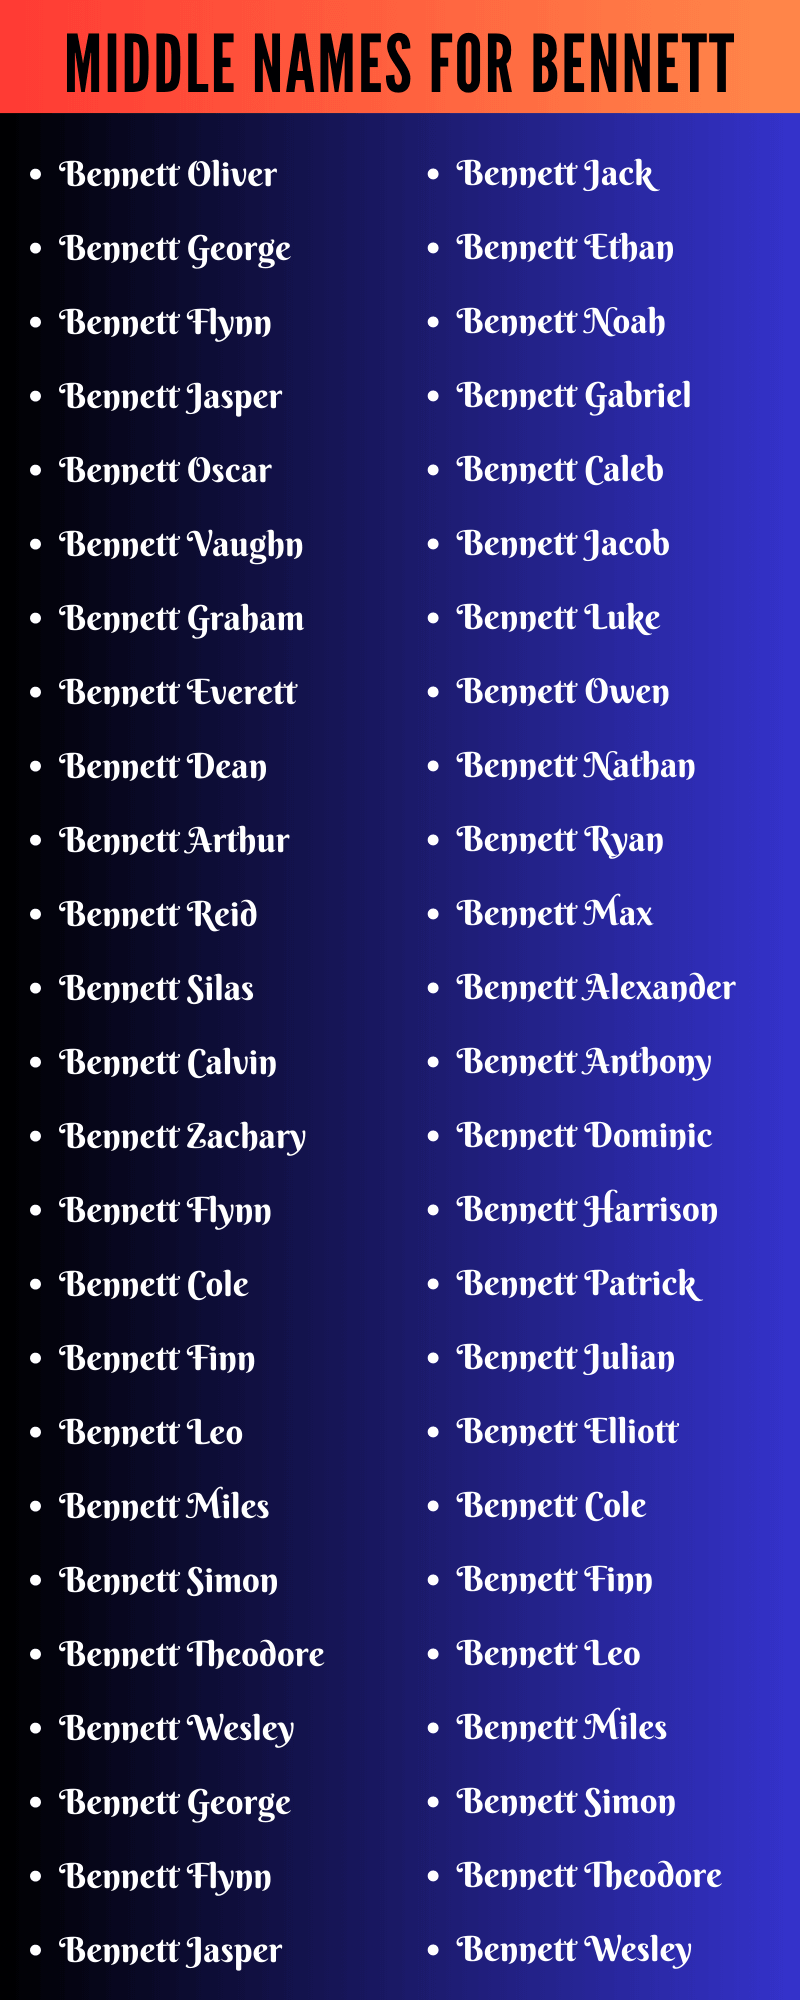 Middle Names For Bennett